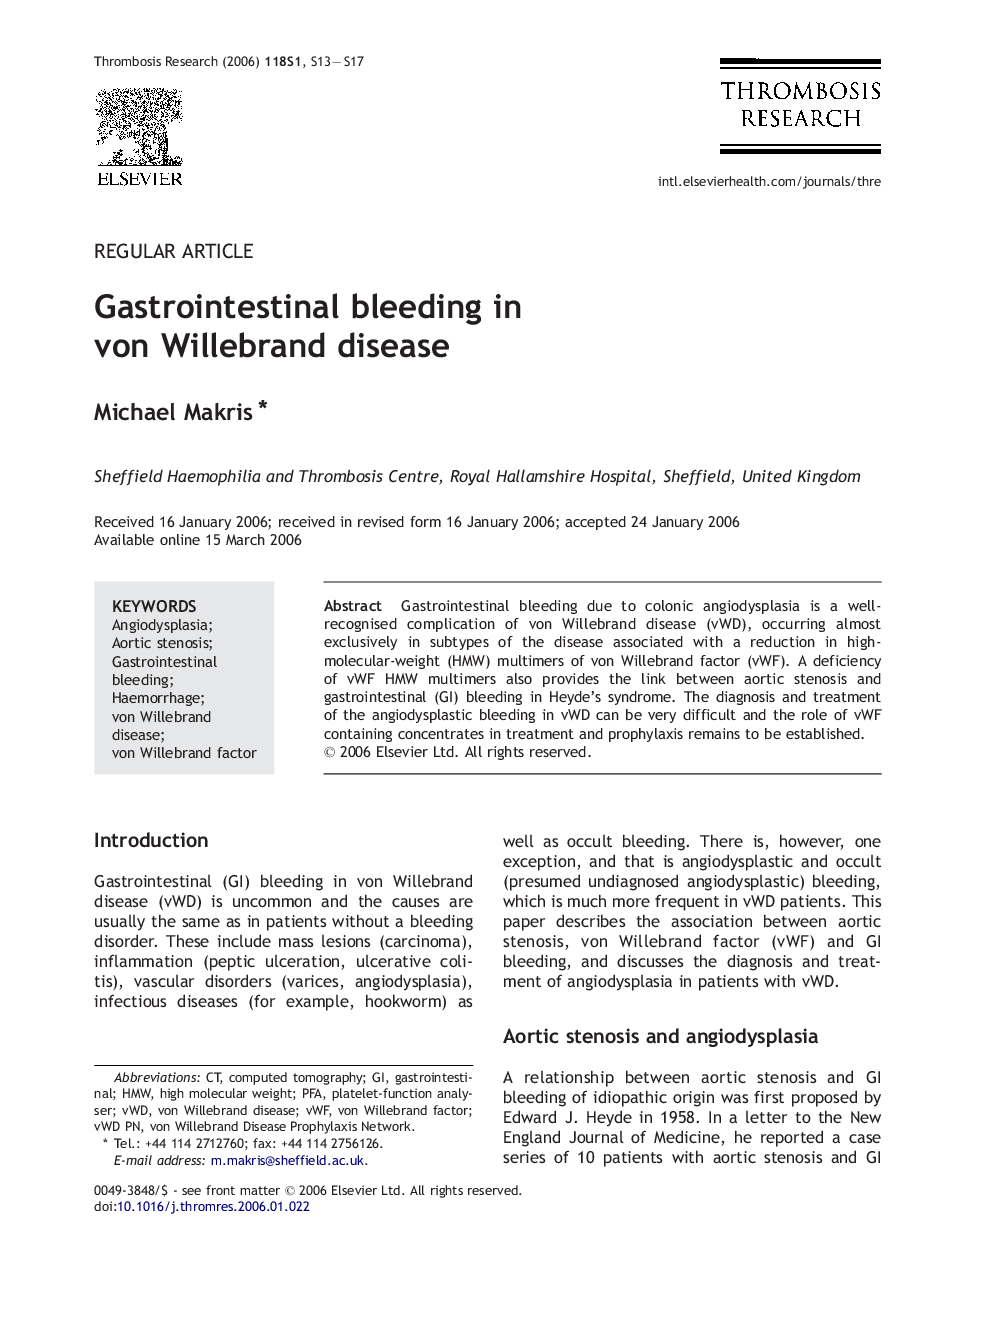 Gastrointestinal bleeding in von Willebrand disease